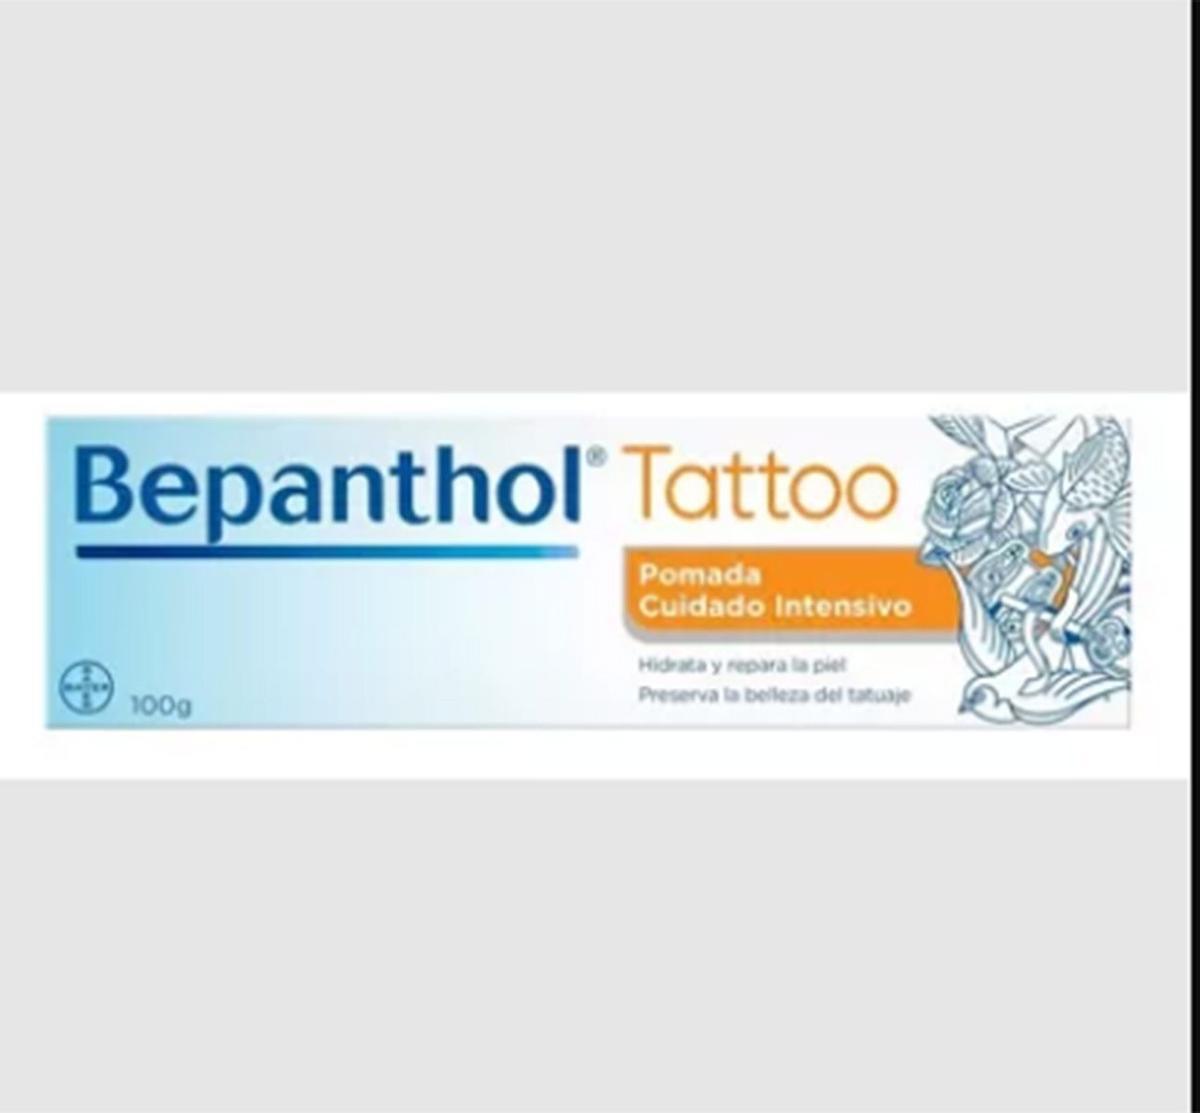 Crema para el cuidado del tatuaje, de Bepanthol